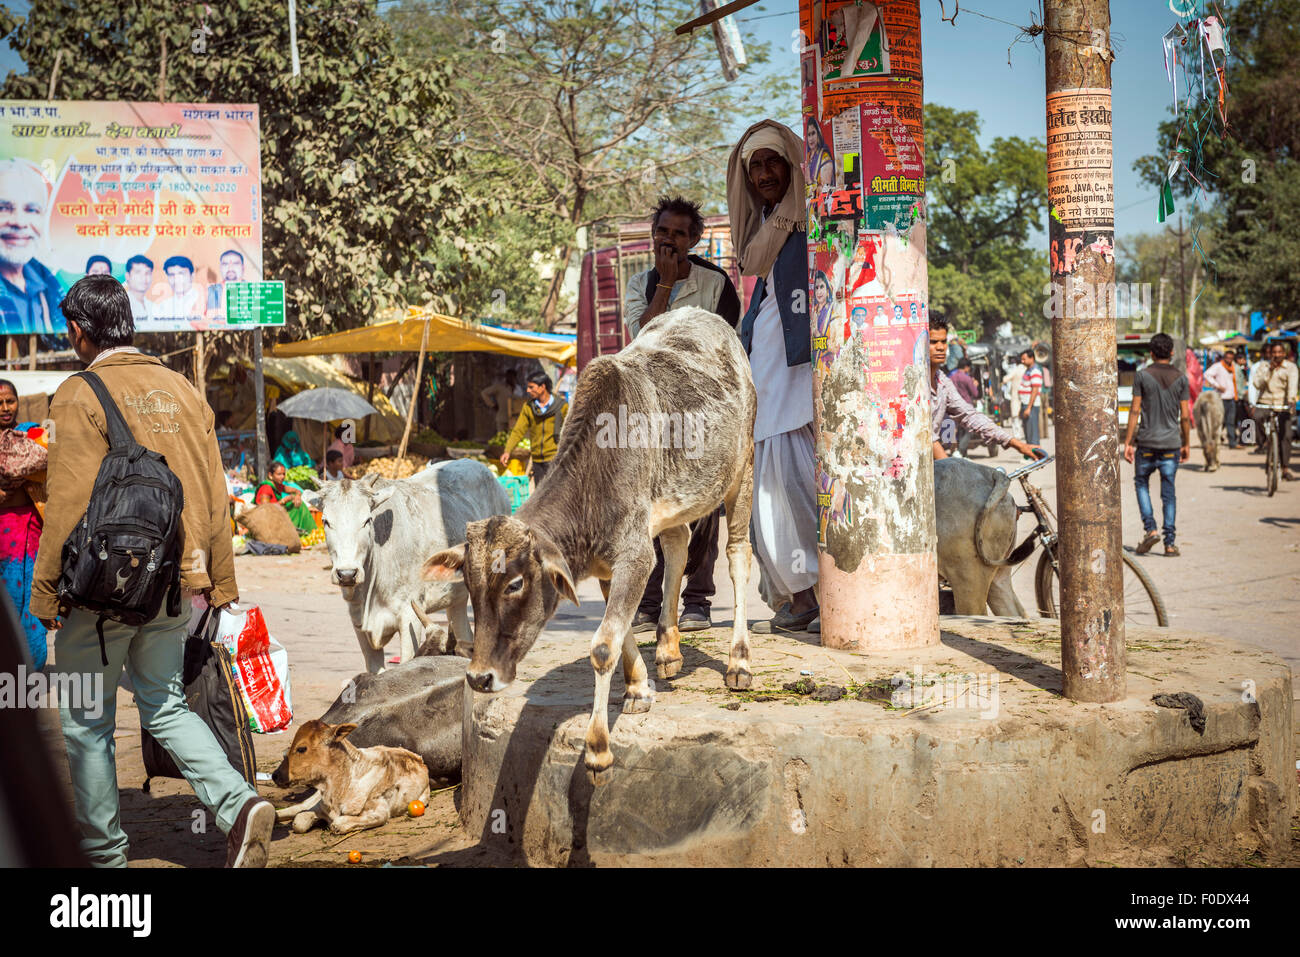 La vie quotidienne dans une petite ville de l'Inde Banque D'Images